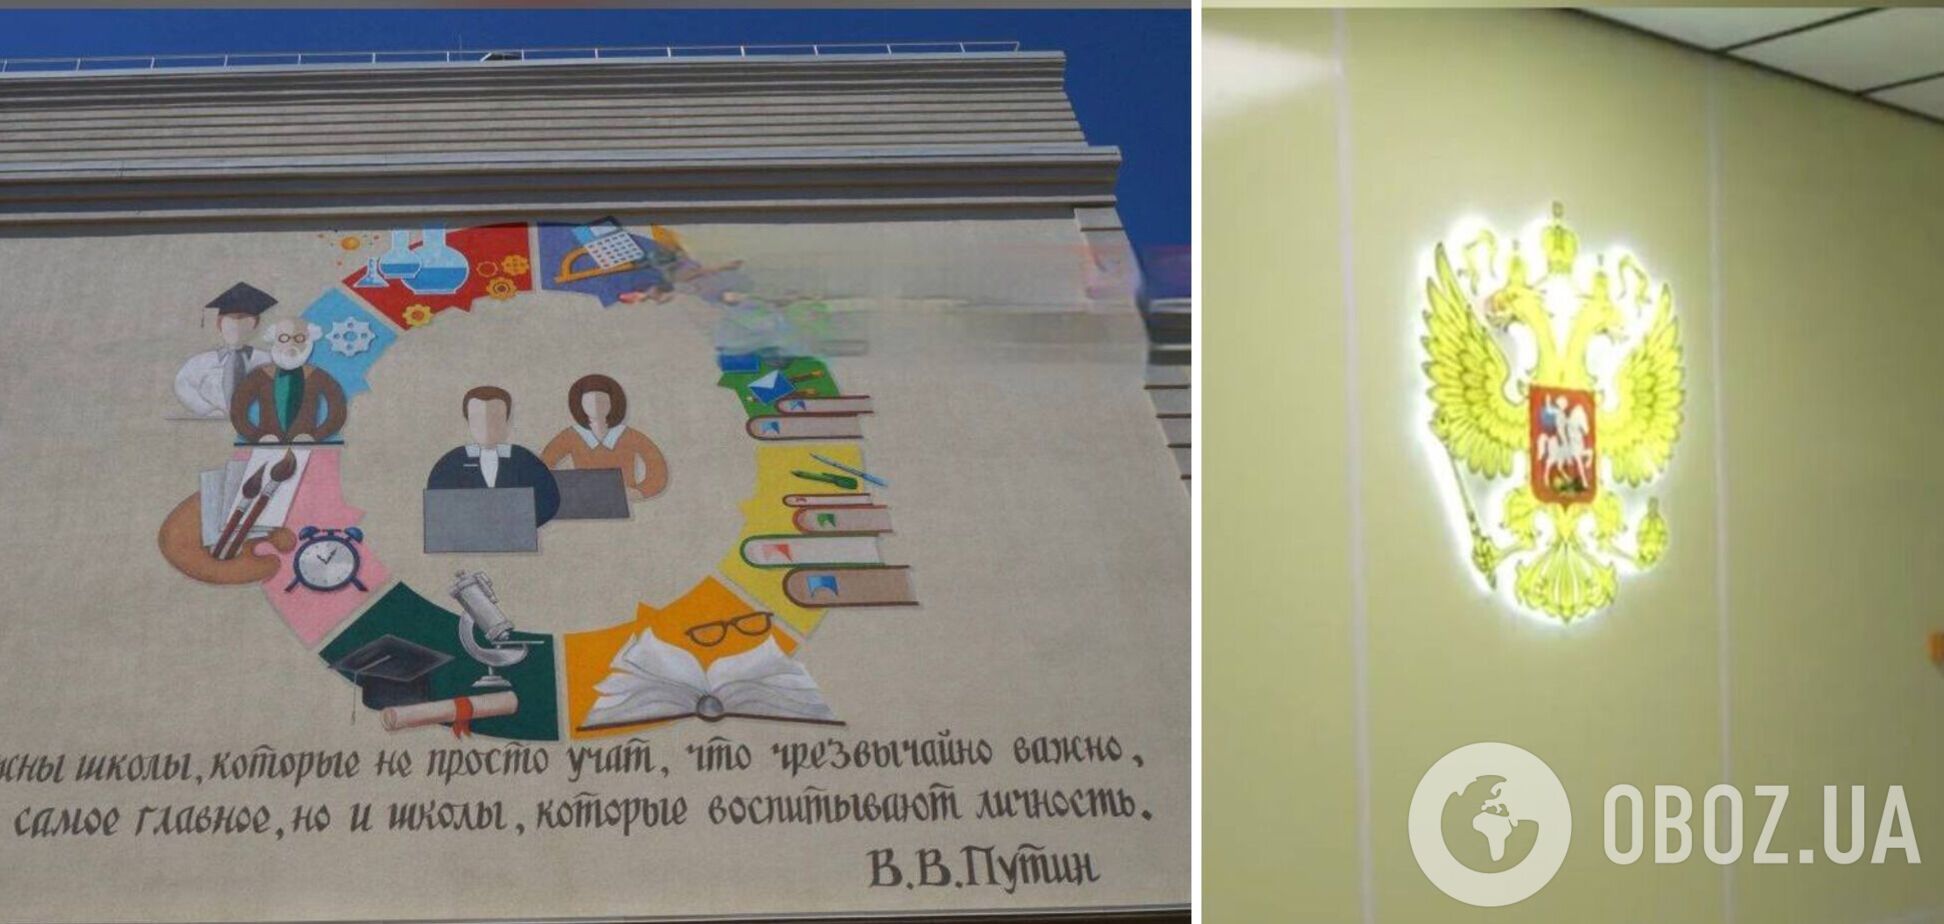 Как в СССР: в оккупированном Мариуполе расписали стены школы цитатами Путина. Фотофакты